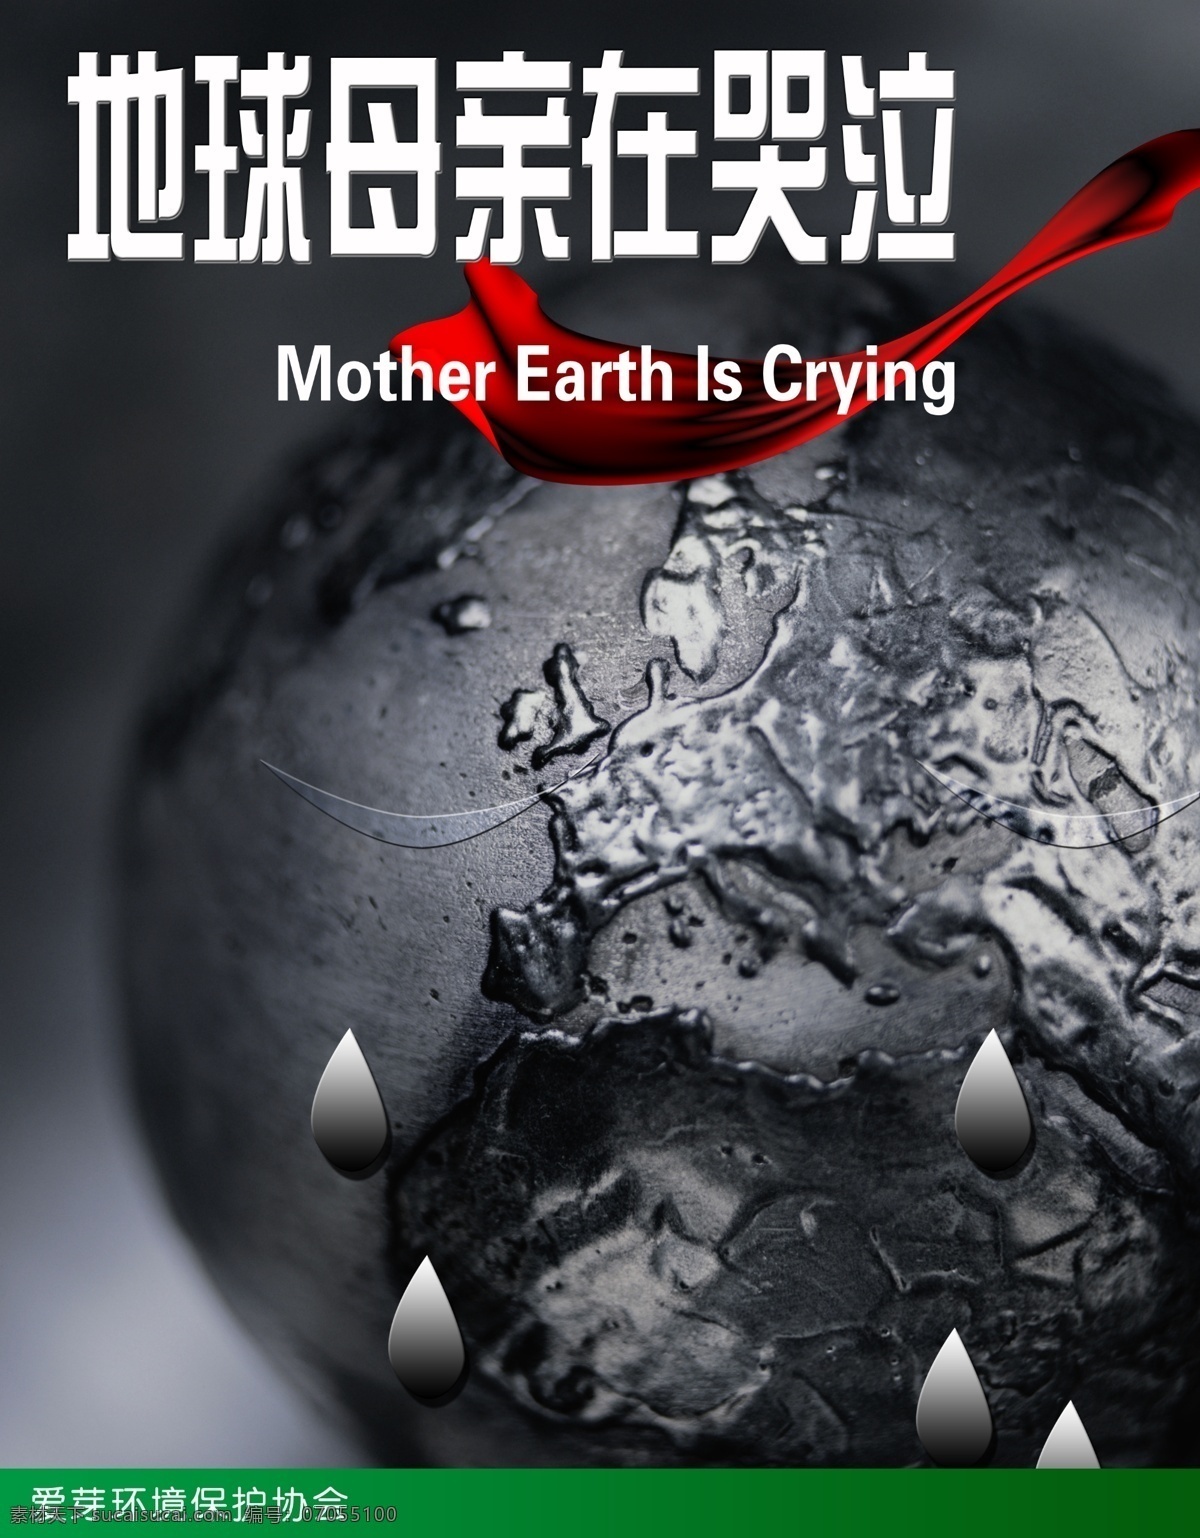 公益广告 公益 广告 海报 地球 母亲 哭泣 红飘带 环境保护 广告设计模板 源文件